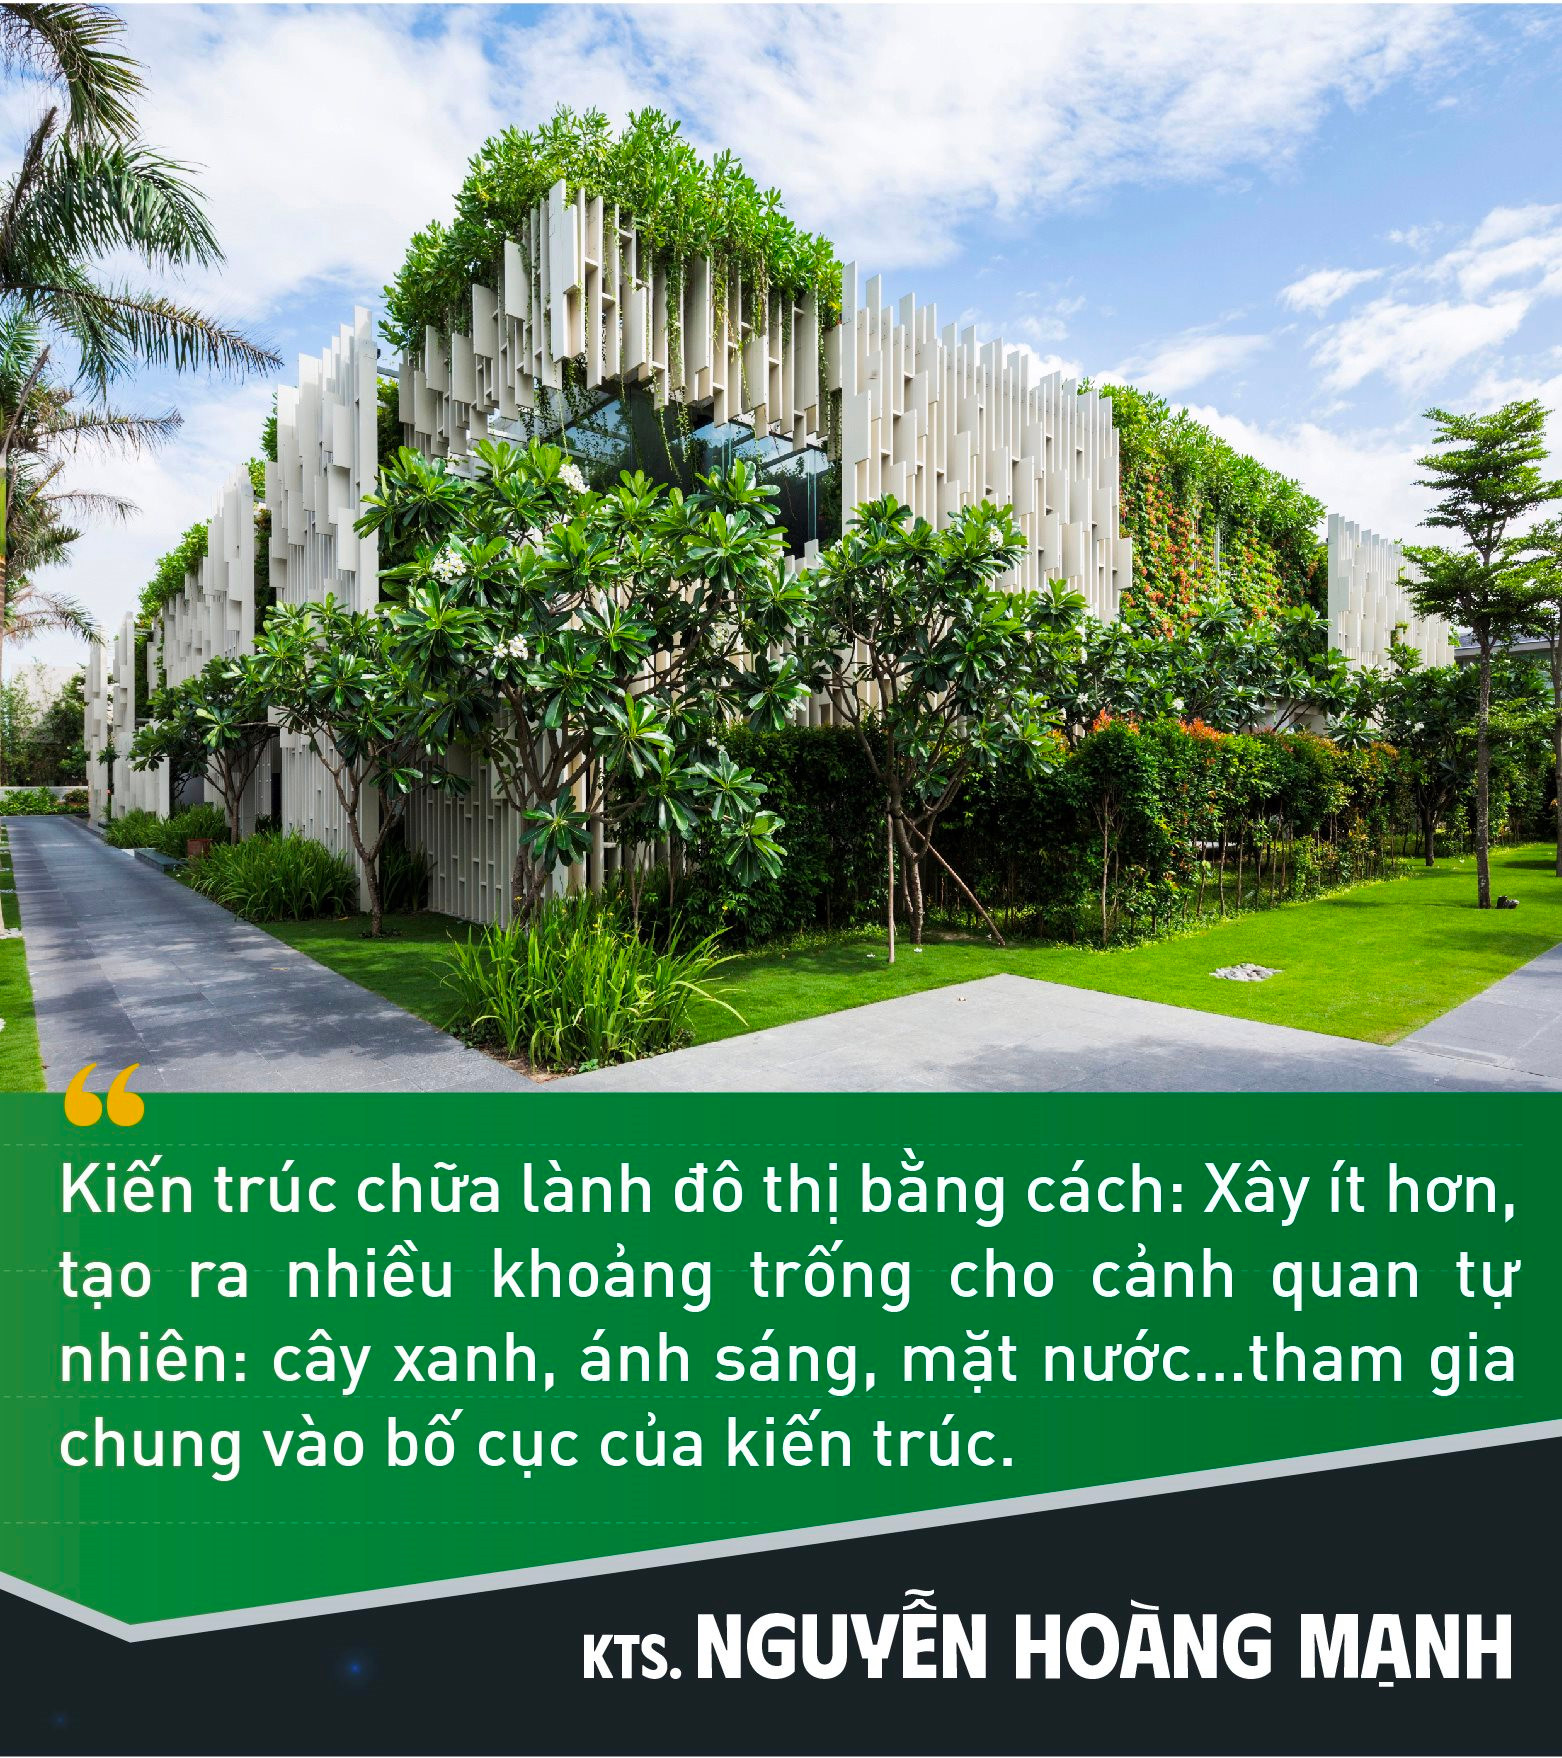 KTS. Nguyễn Hoàng Mạnh: 